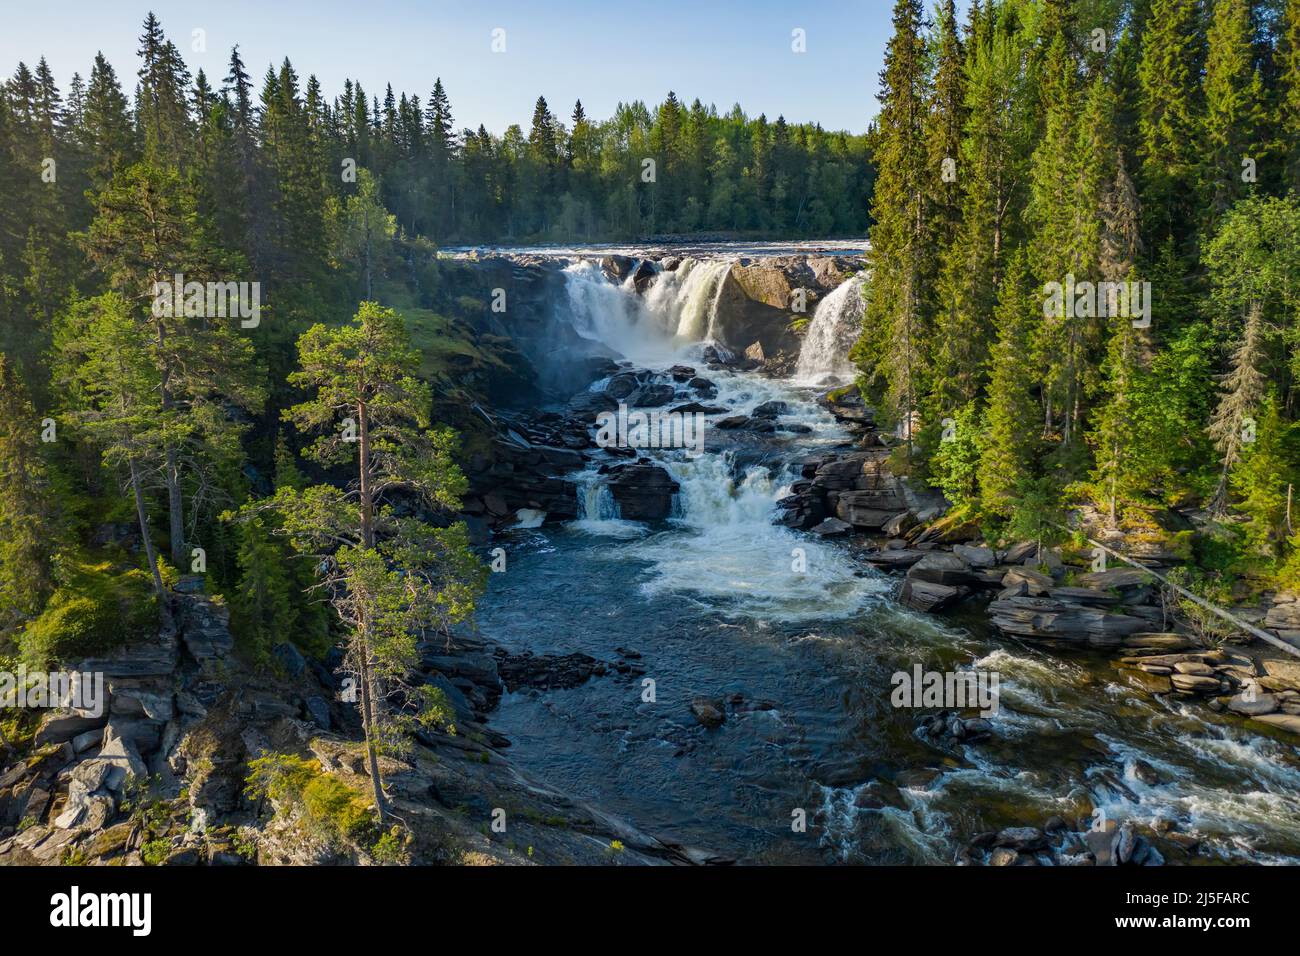 Ristafallet waterfall dans la partie ouest de Jamtland est répertorié comme l'un des plus belles chutes d'eau en Suède. Banque D'Images